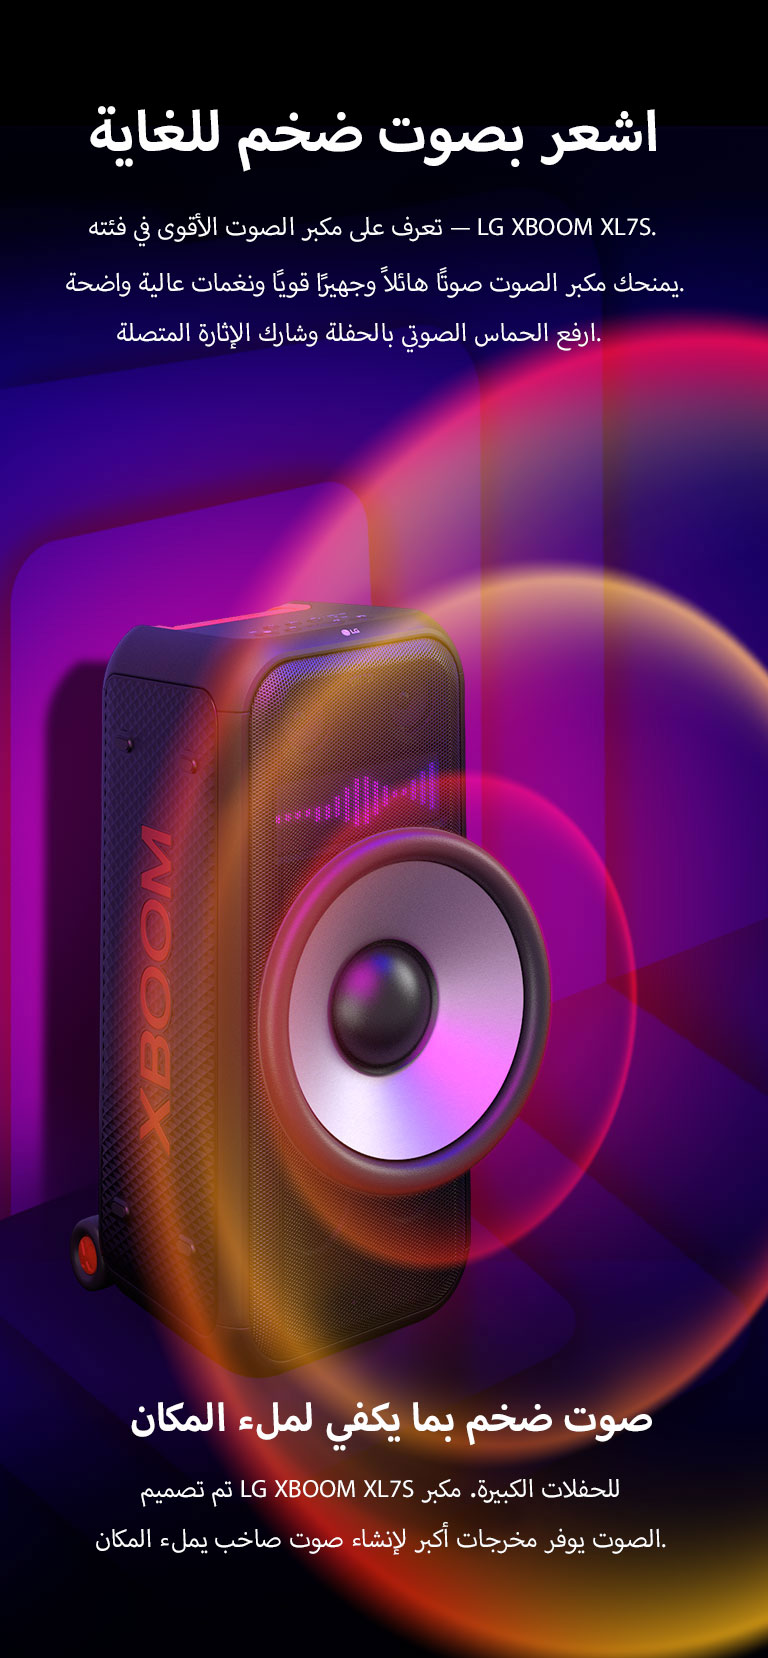 LG XBOOM XL7S موضوع في مساحة شاسعة. على الجدار تظهر رسومات صوتية مربعة الشكل. في وسط مكبر الصوت تظهر سماعات woofers عملاقة مقاس 8 بوصة مُكبَّرة لتعزيز الصوت بقوة 250 واط. تخرج الموجات الصوتية من مكبر الصوت. 